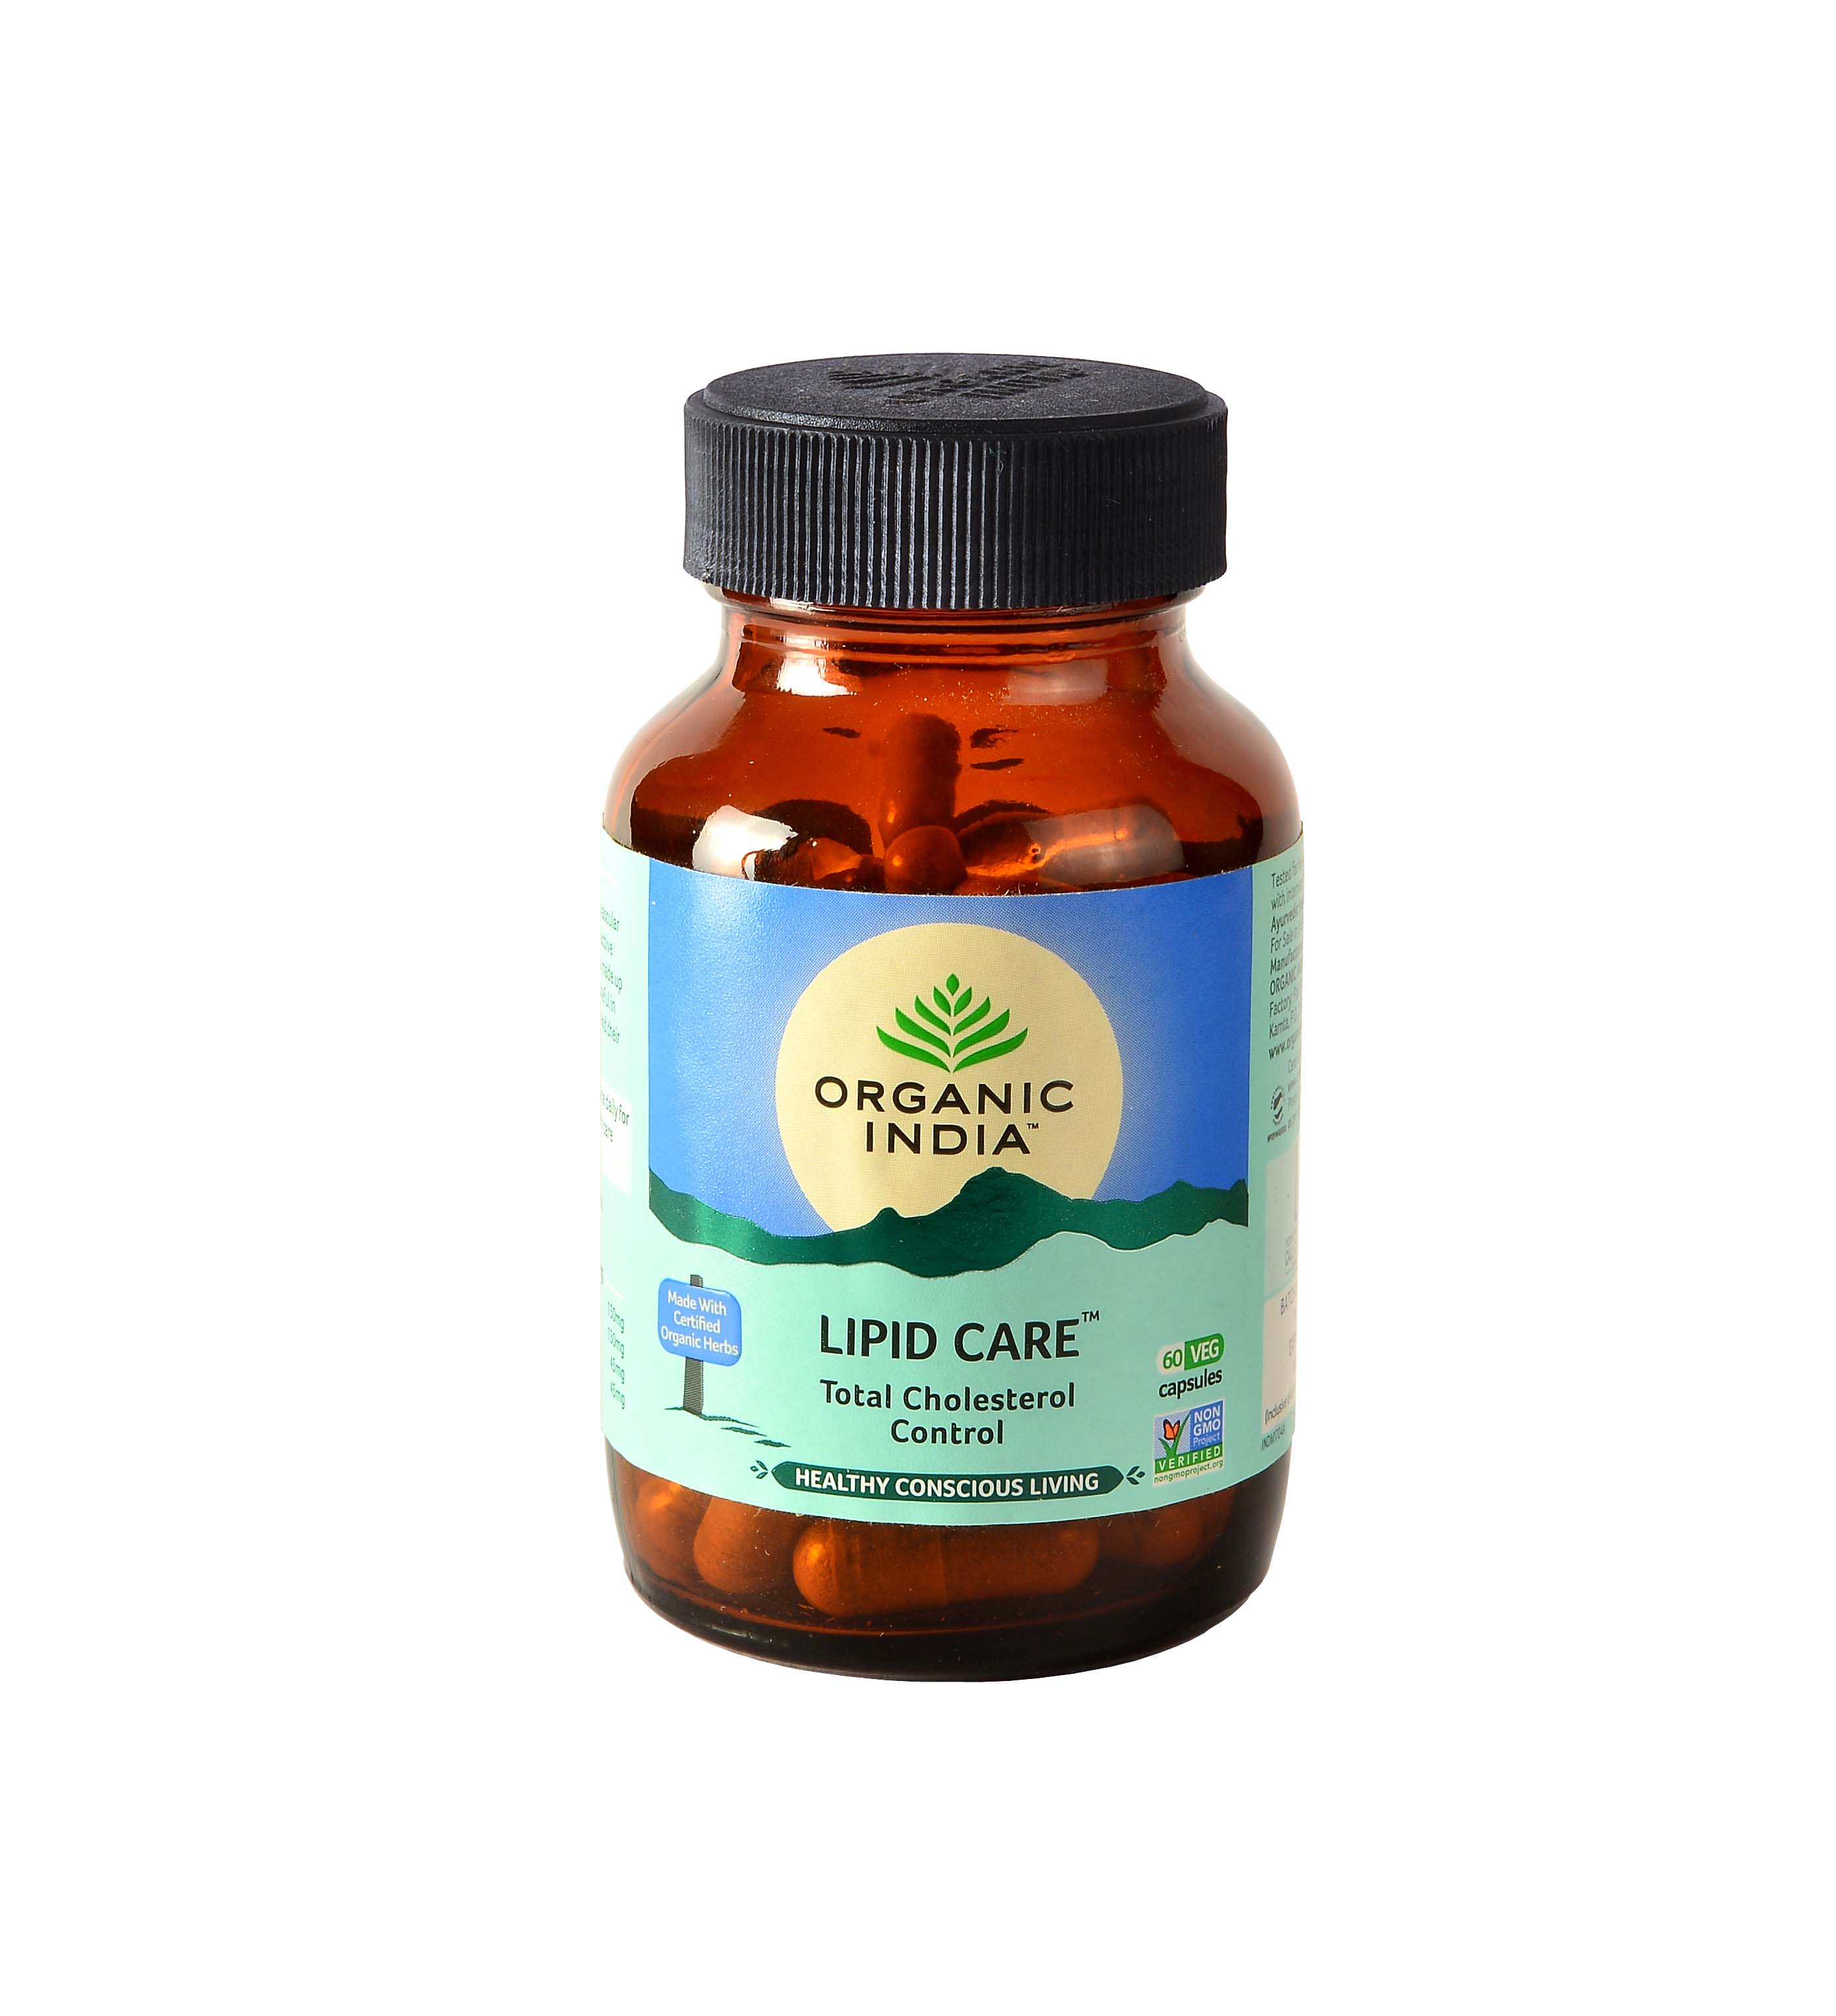 Buy Organic India Lipid Care Capsule at Best Price Online